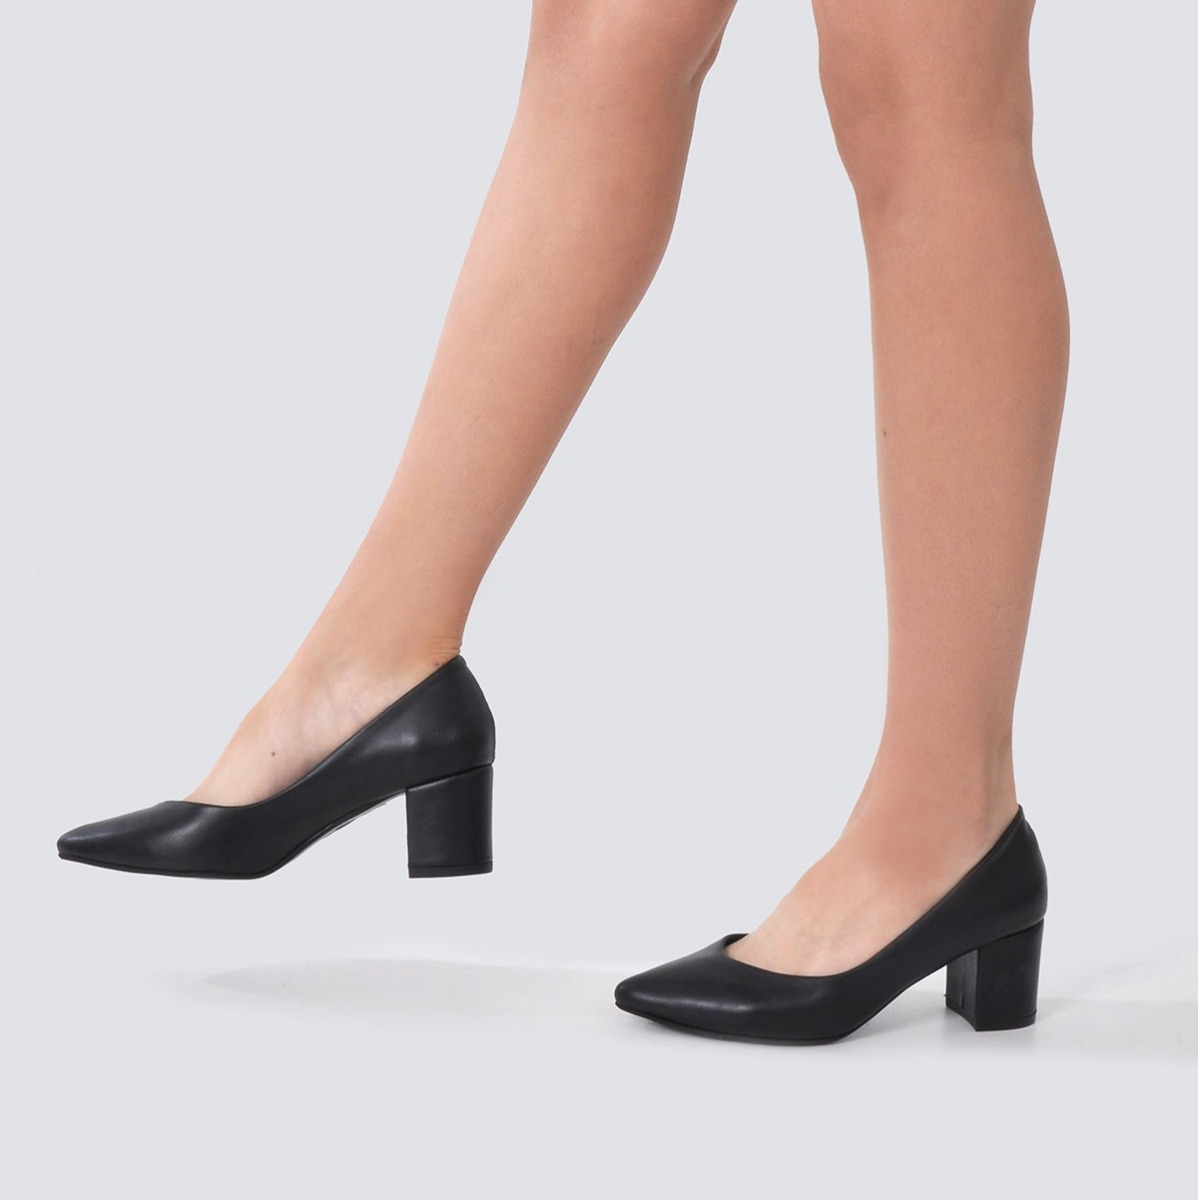 Flo Kadın  Lacivert Klasik Topuklu Ayakkabı VZN21-040Y. 3